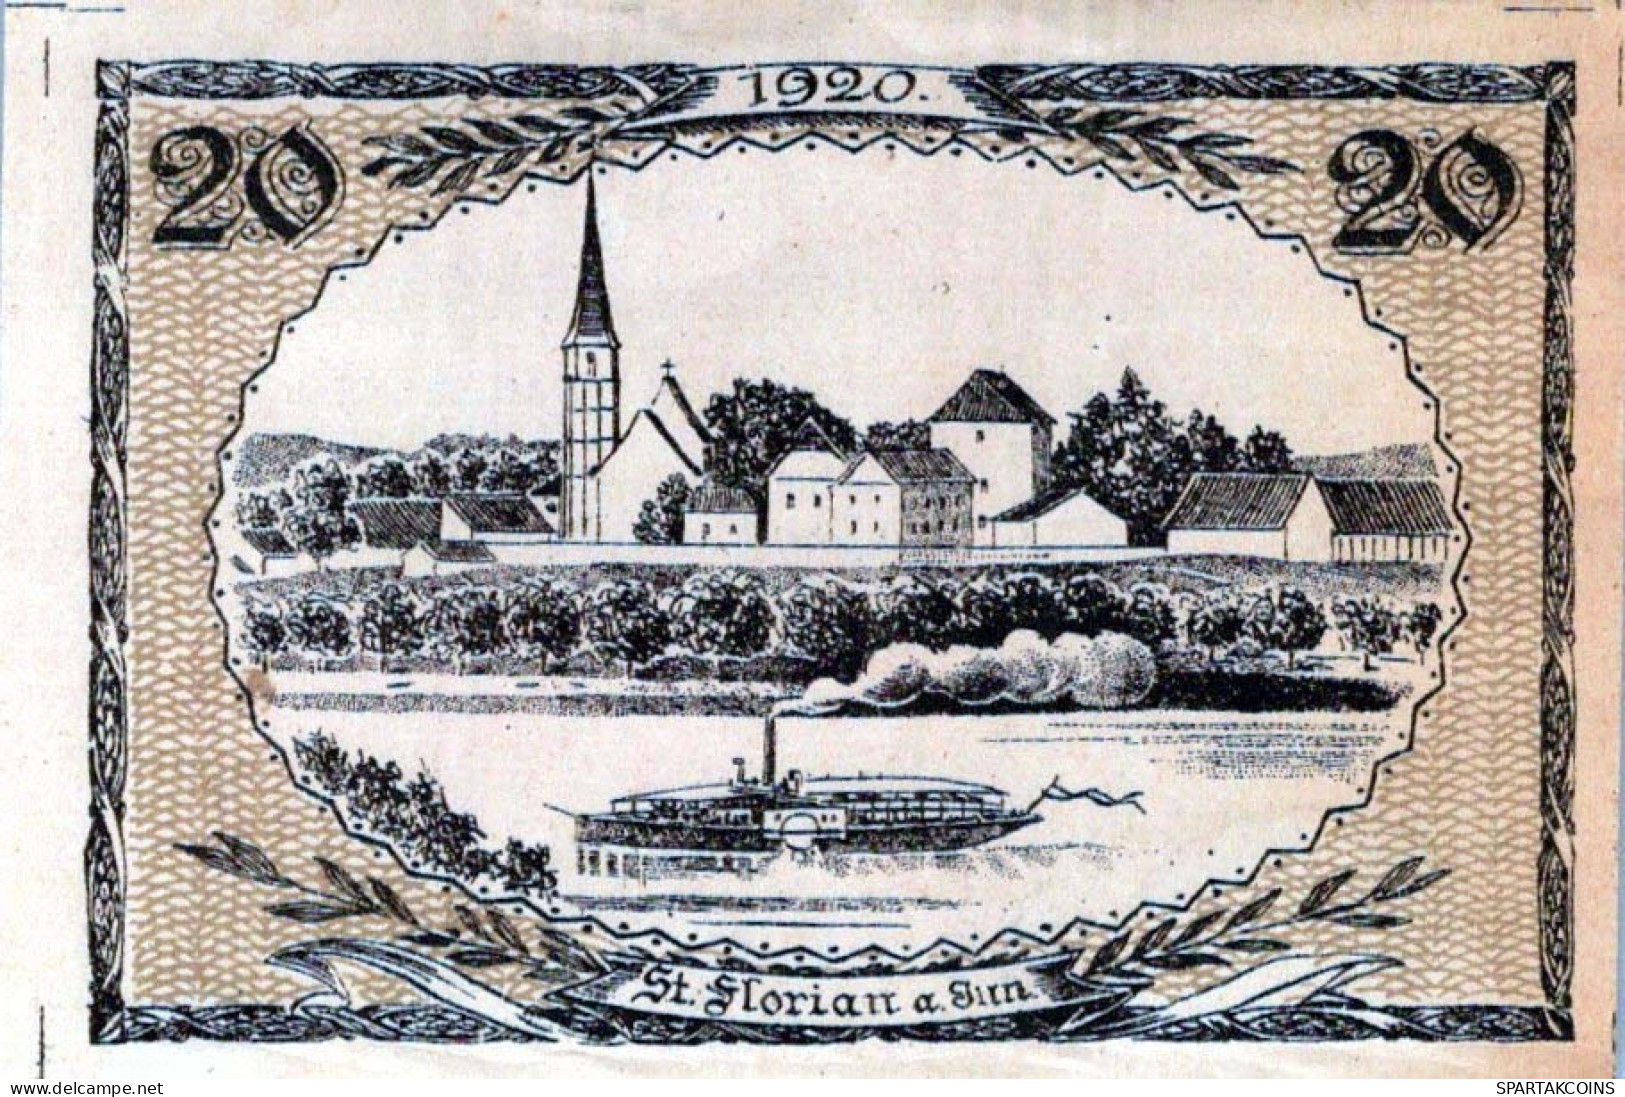 20 HELLER 1920 Stadt SANKT FLORIAN AM INN Oberösterreich Österreich #PE612 - [11] Local Banknote Issues